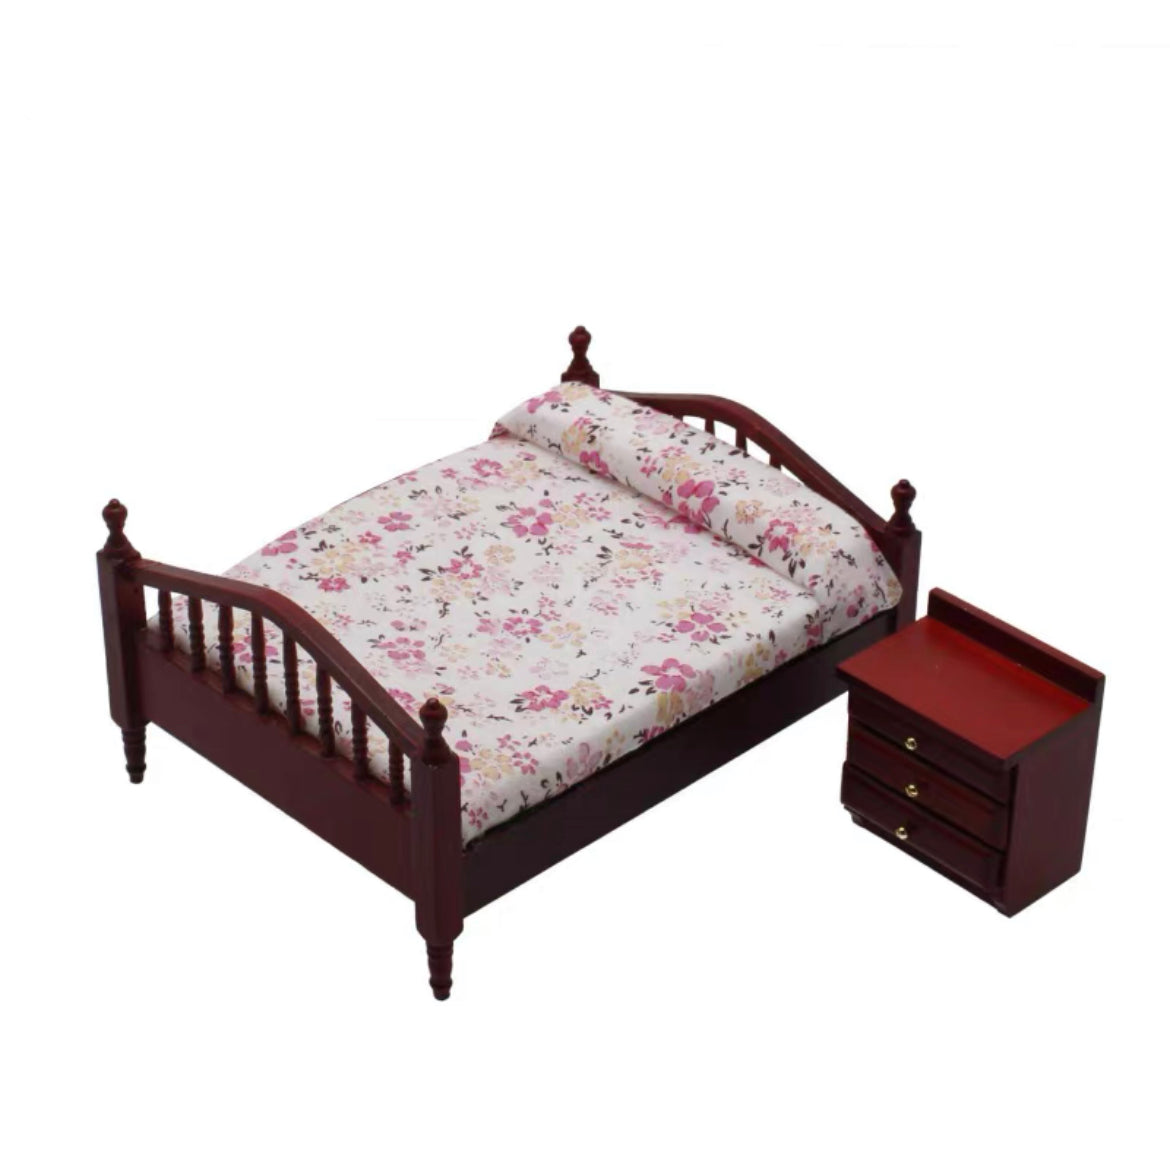 BJD/blythe/ob11 doll Furniture BED size 16CM